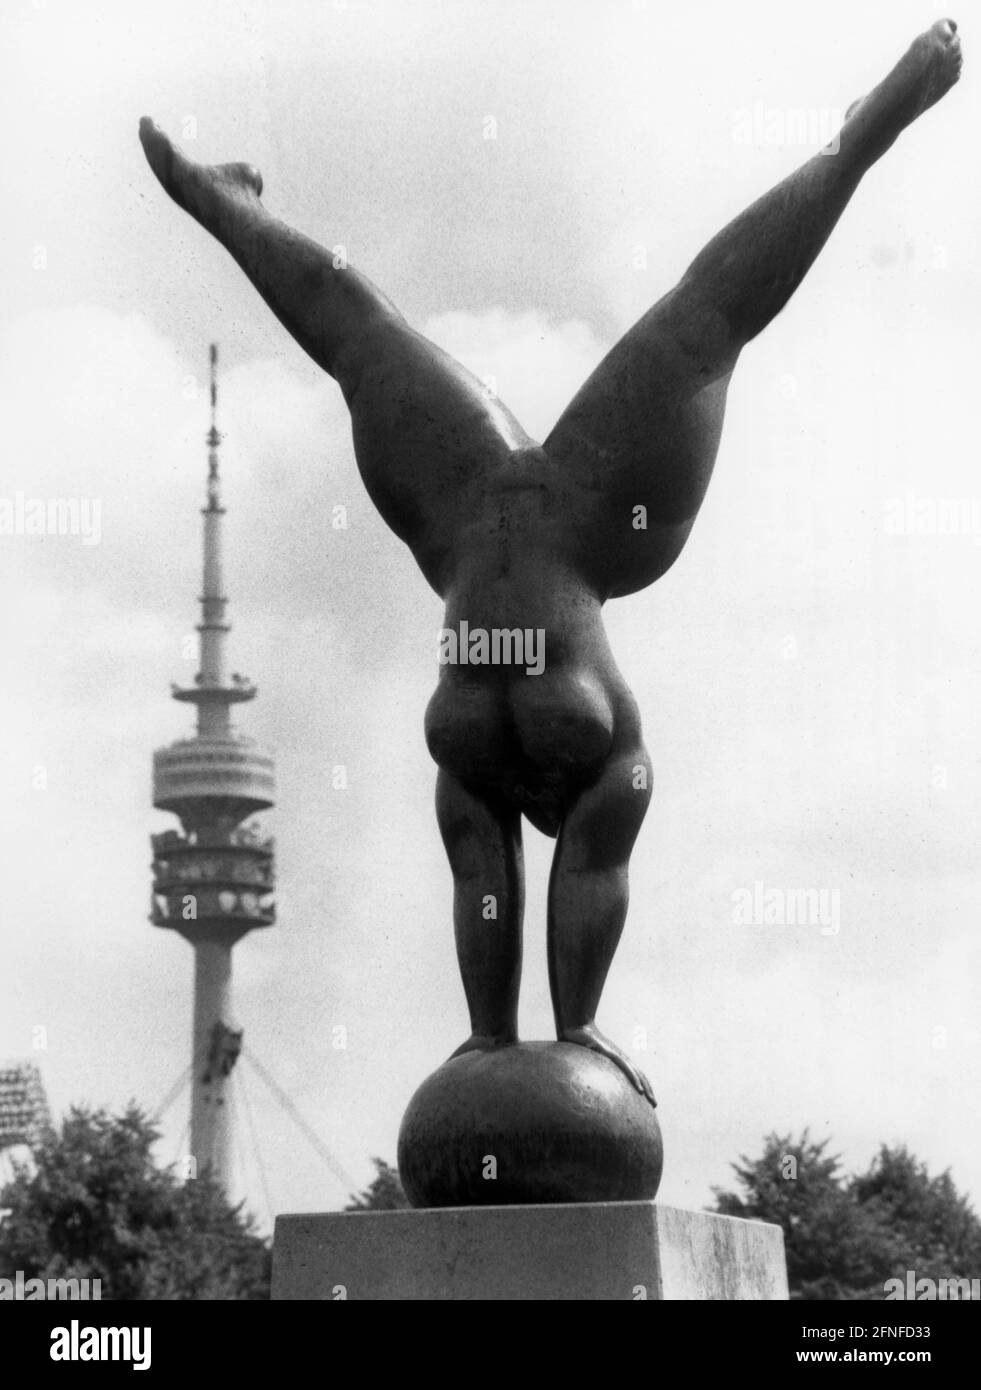 "Illustrazione della scultura in bronzo ''Olympia Triumphans'' di Martin Meyer, eretta nel Parco Olimpico di Monaco nel 1972. Un atleta si bilancia con le mani su una palla. Sullo sfondo la Torre Olimpica di Monaco. [traduzione automatizzata]" Foto Stock